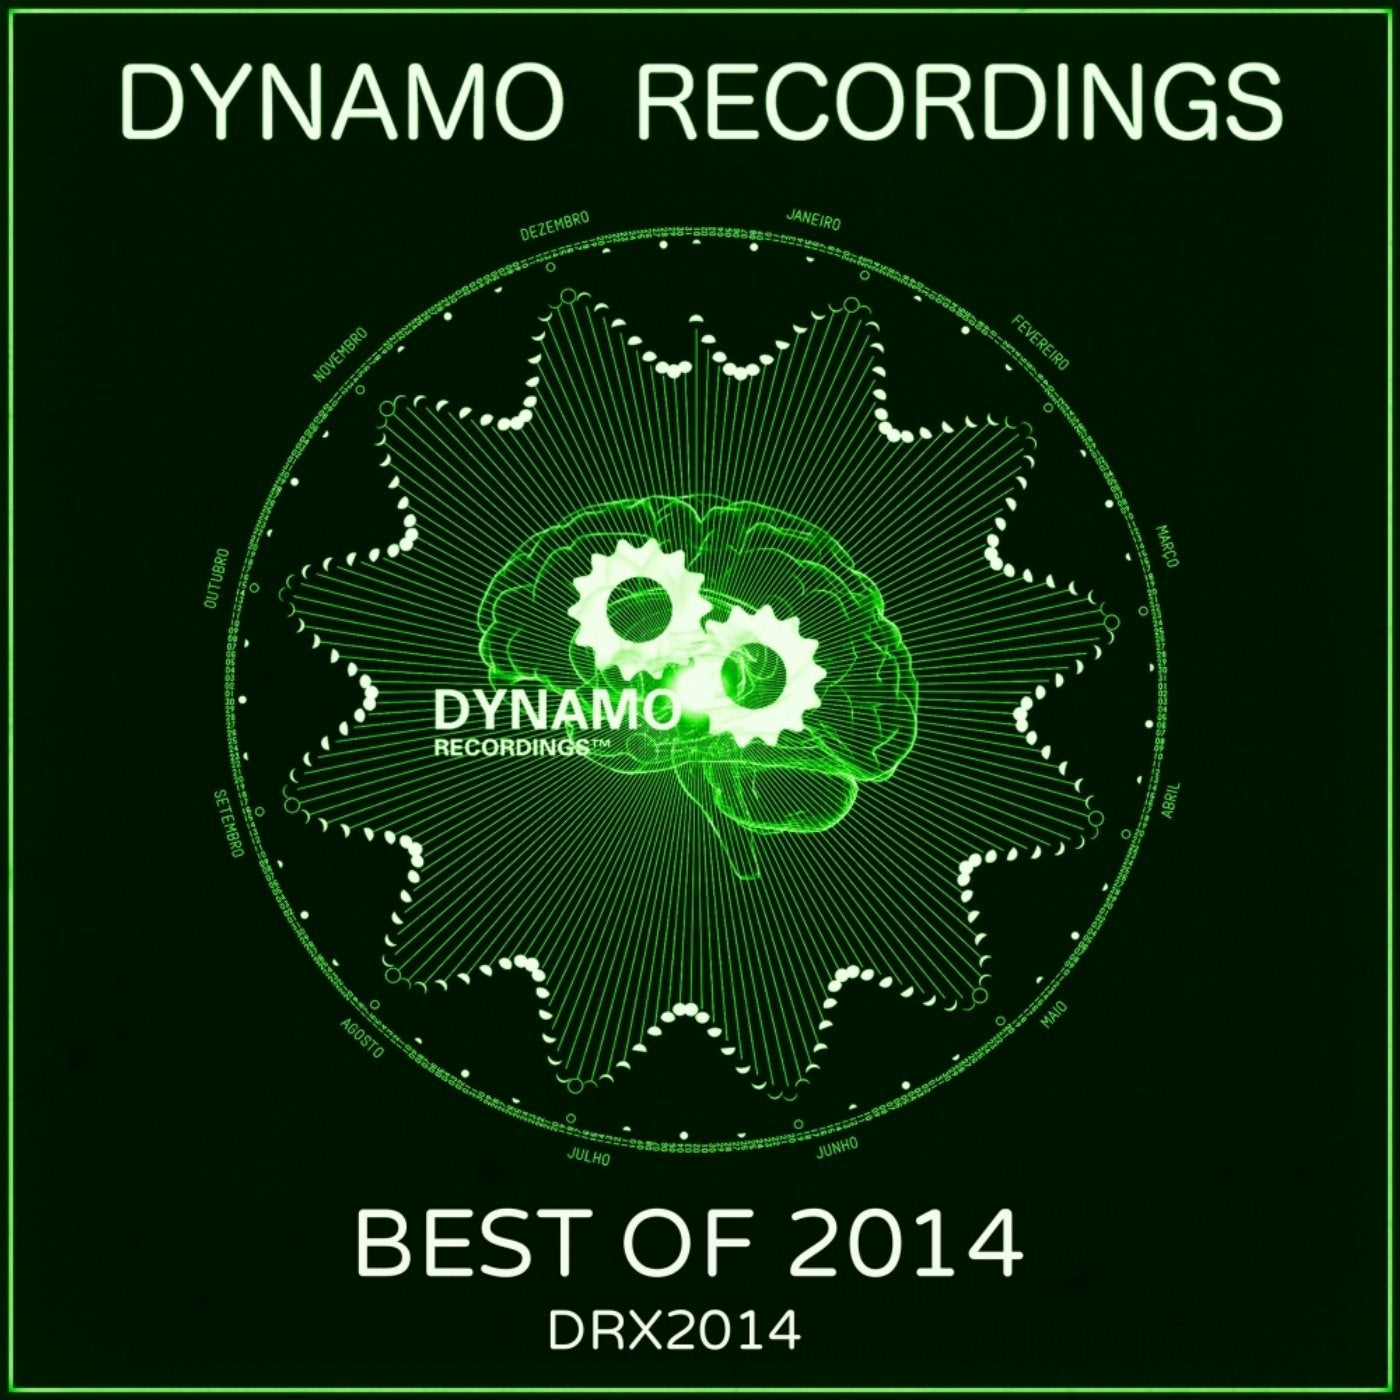 Best of Dynamo 2014